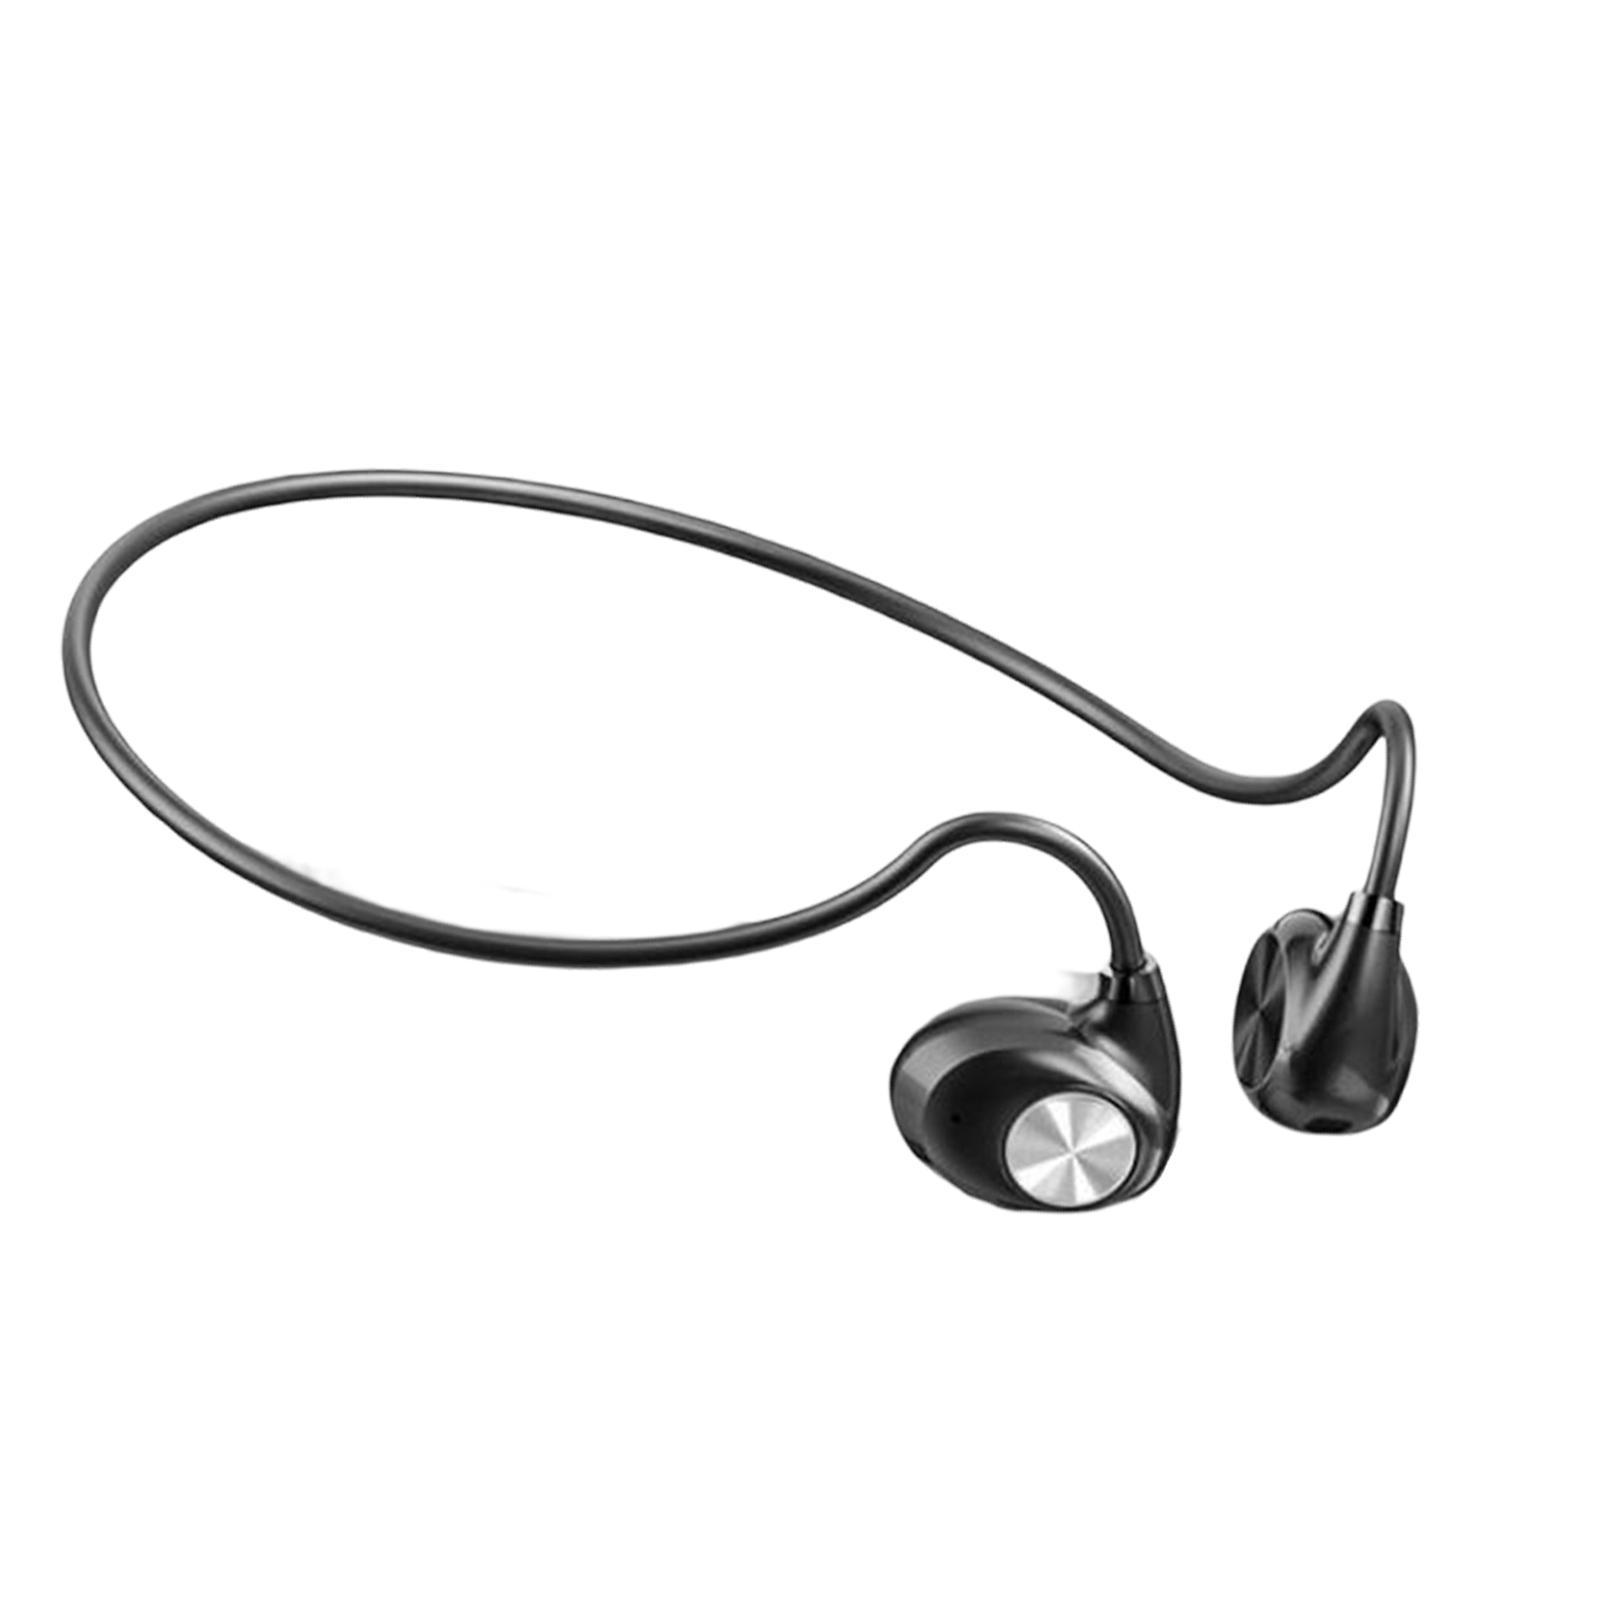 Earphone with Microphone Sports Hiking Headphone Black